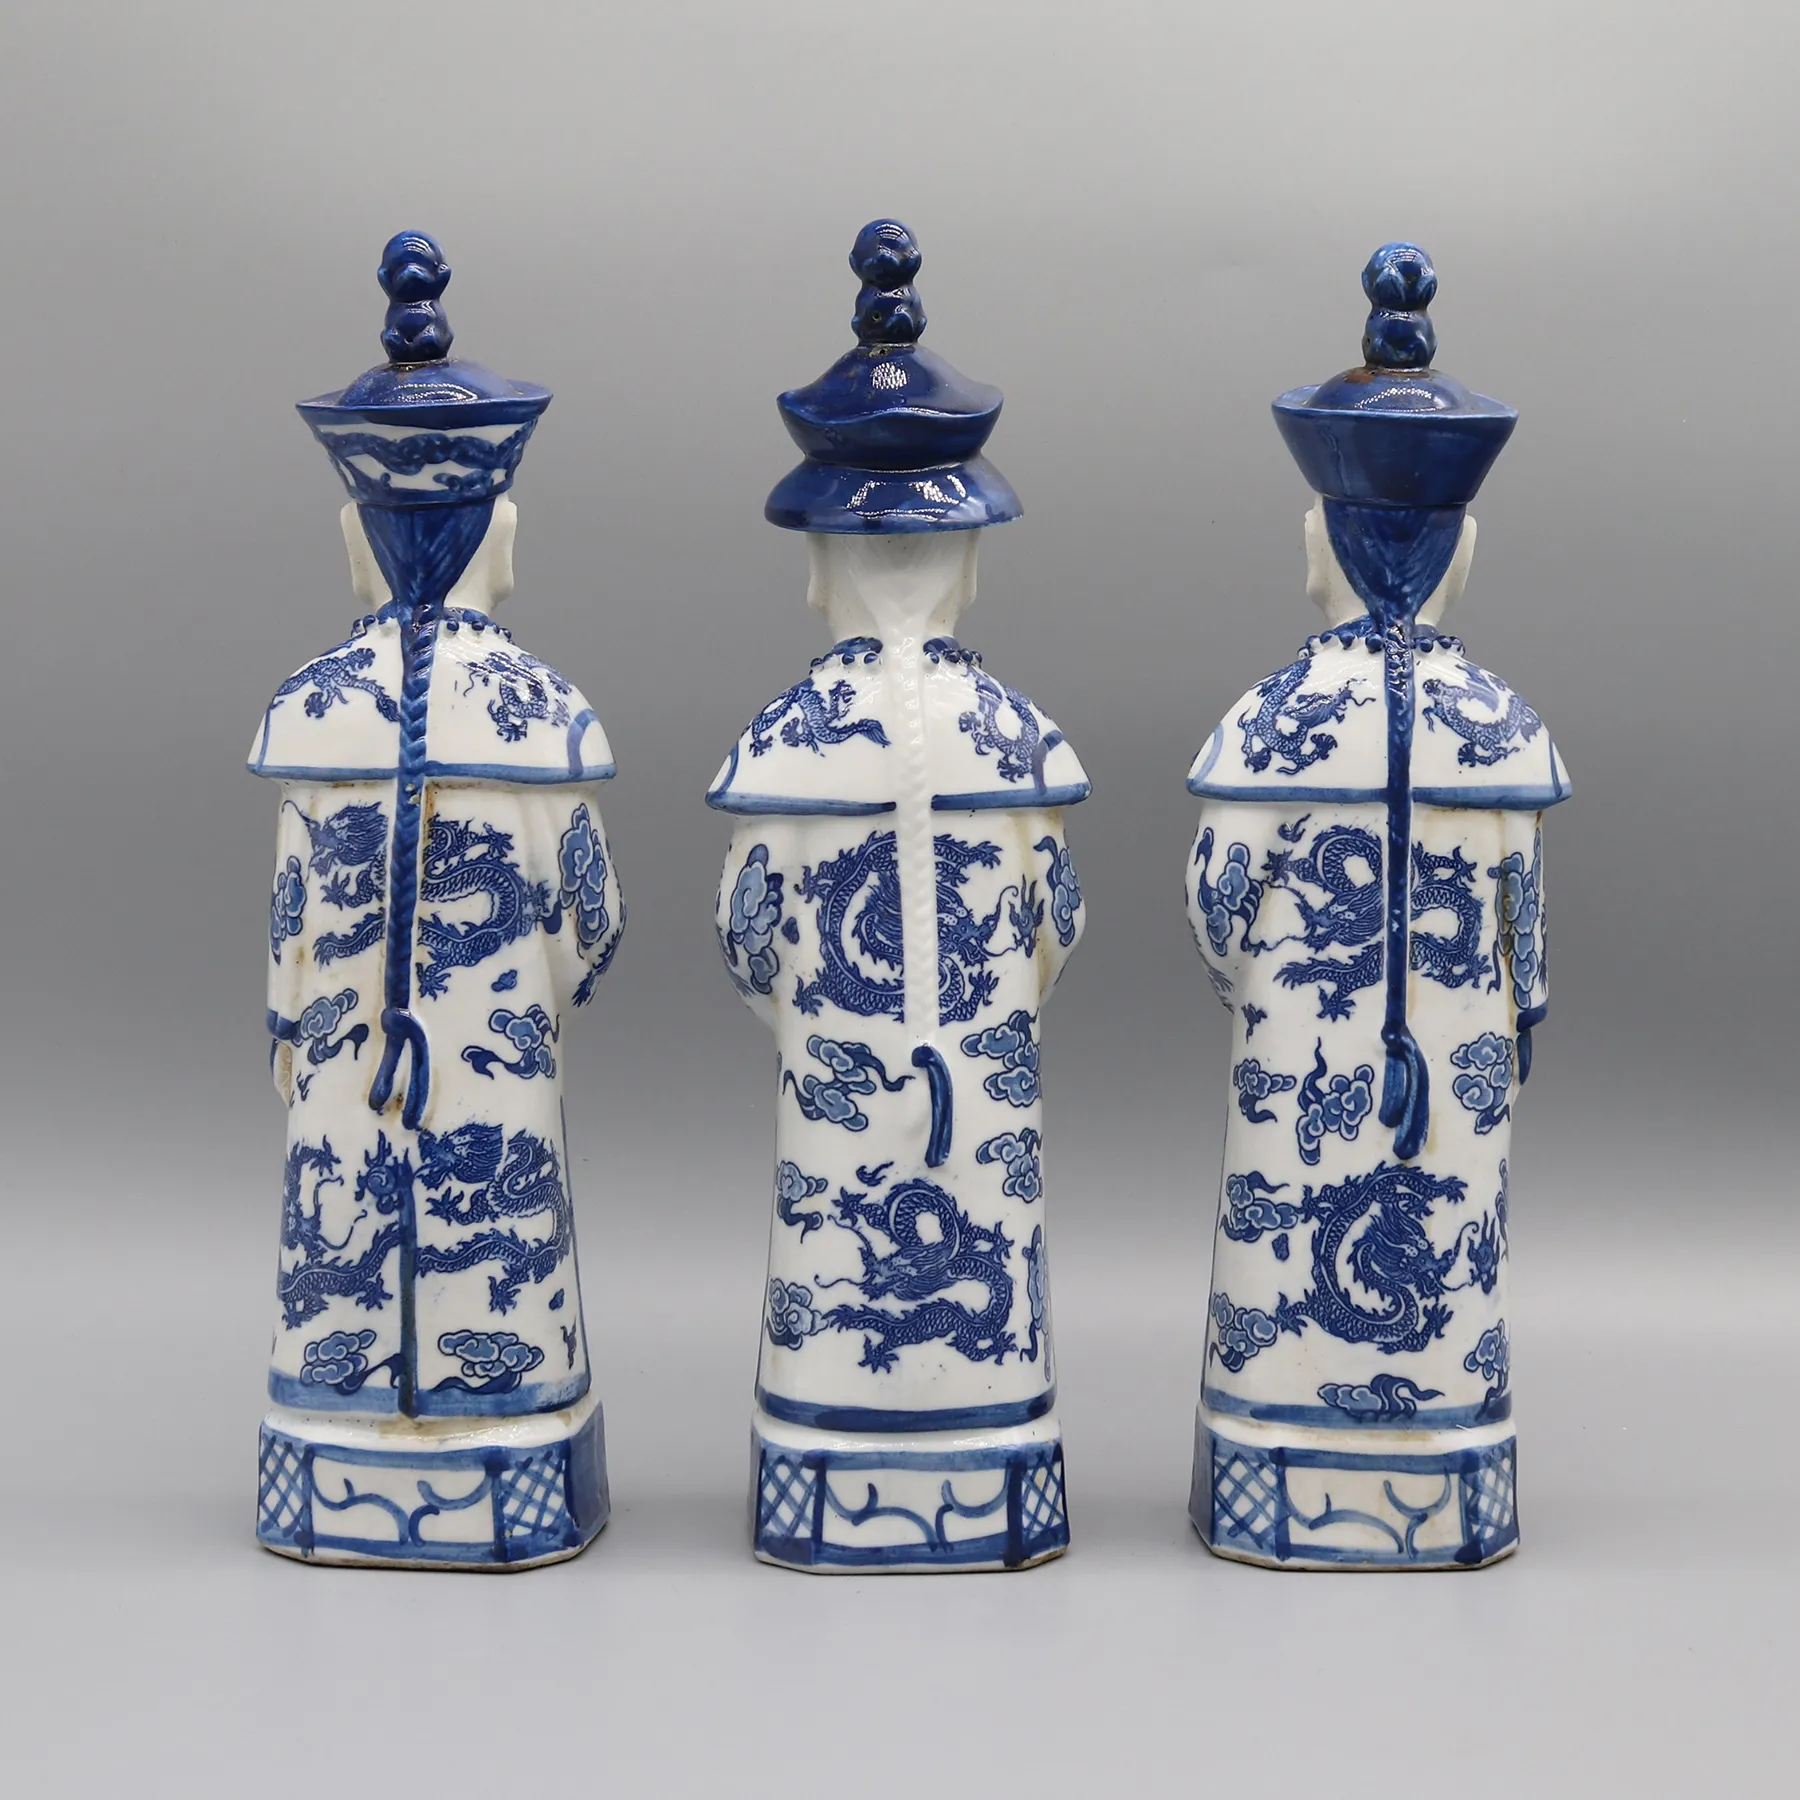 Uppsättning kinesiska kejsarefigurer i Qing -dynastin, keramiska statyer, bordstillbehör, heminredning